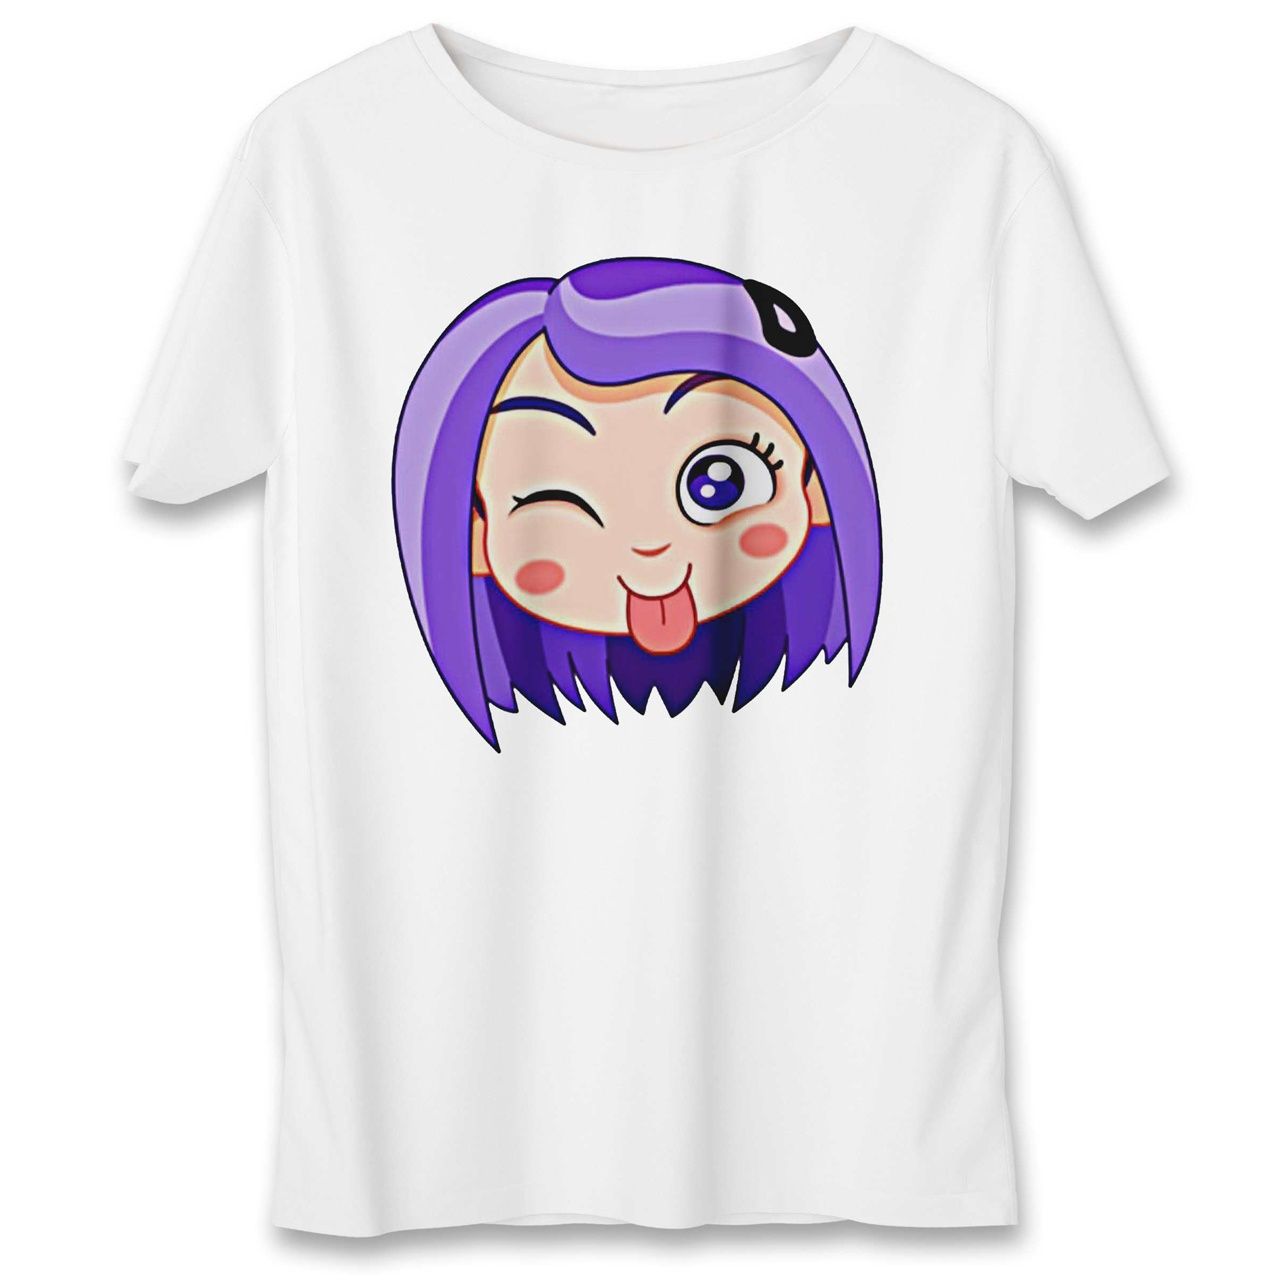 تی شرت به رسم طرح استیکر دختر کد 557 -  - 1